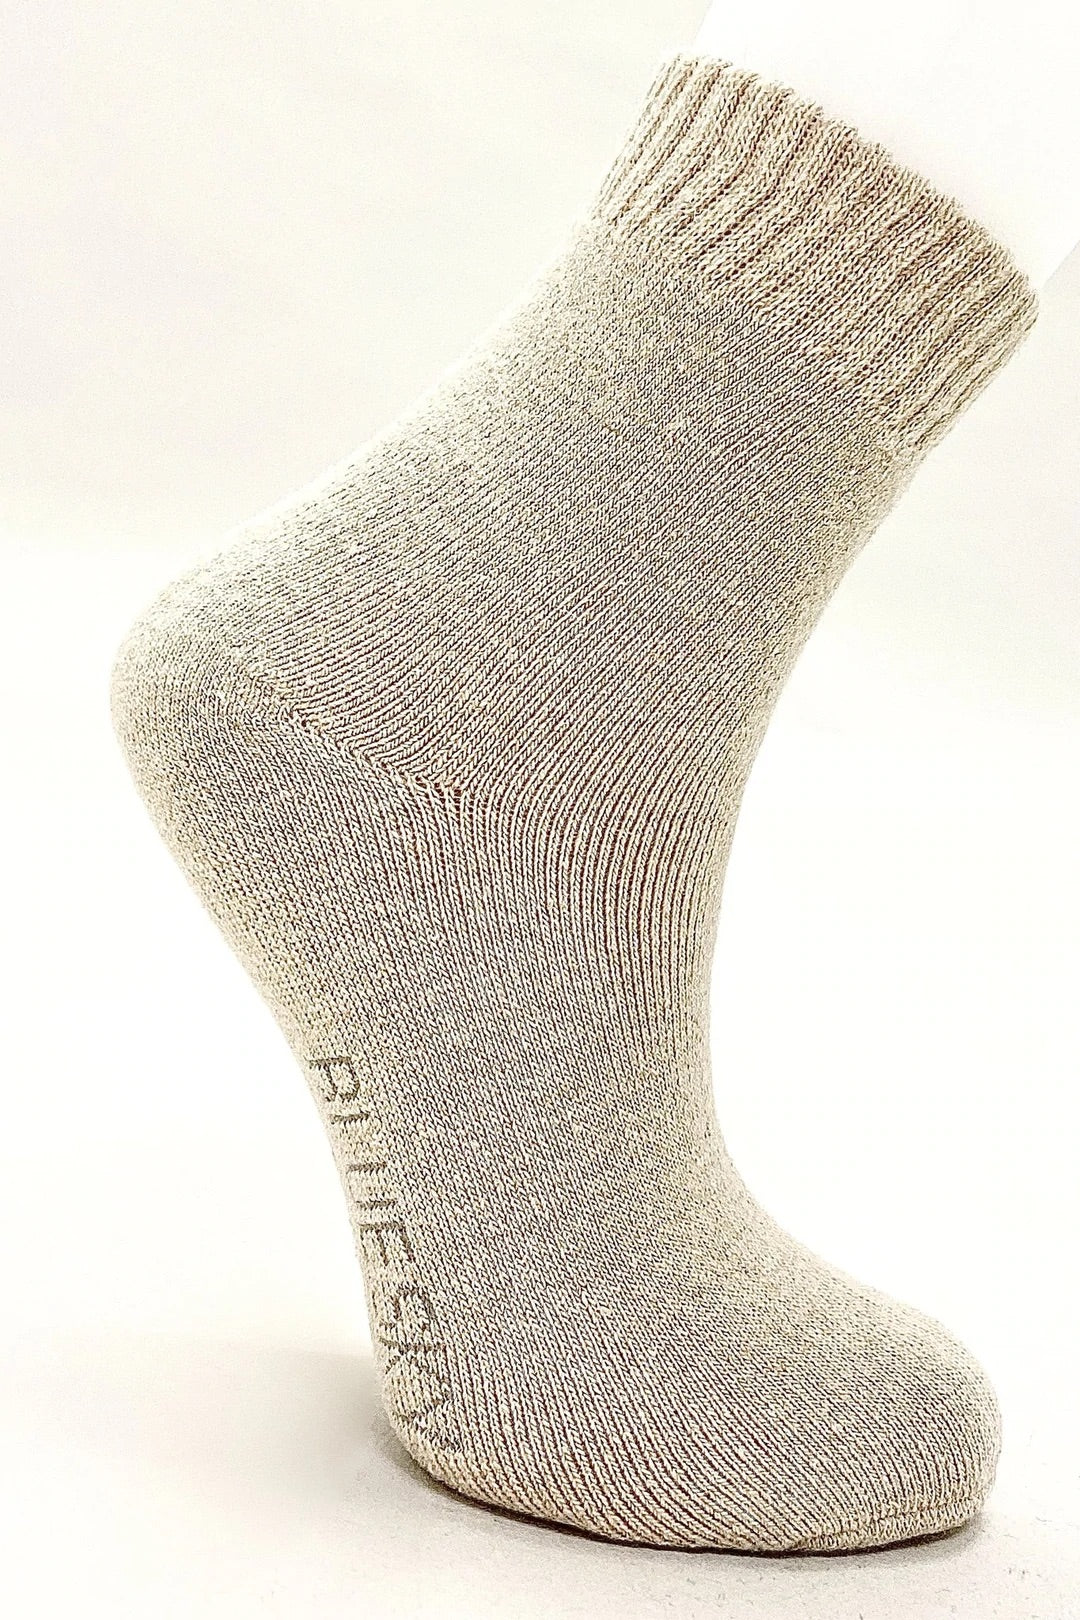 Ladies Merino Wool Socks for Literacy